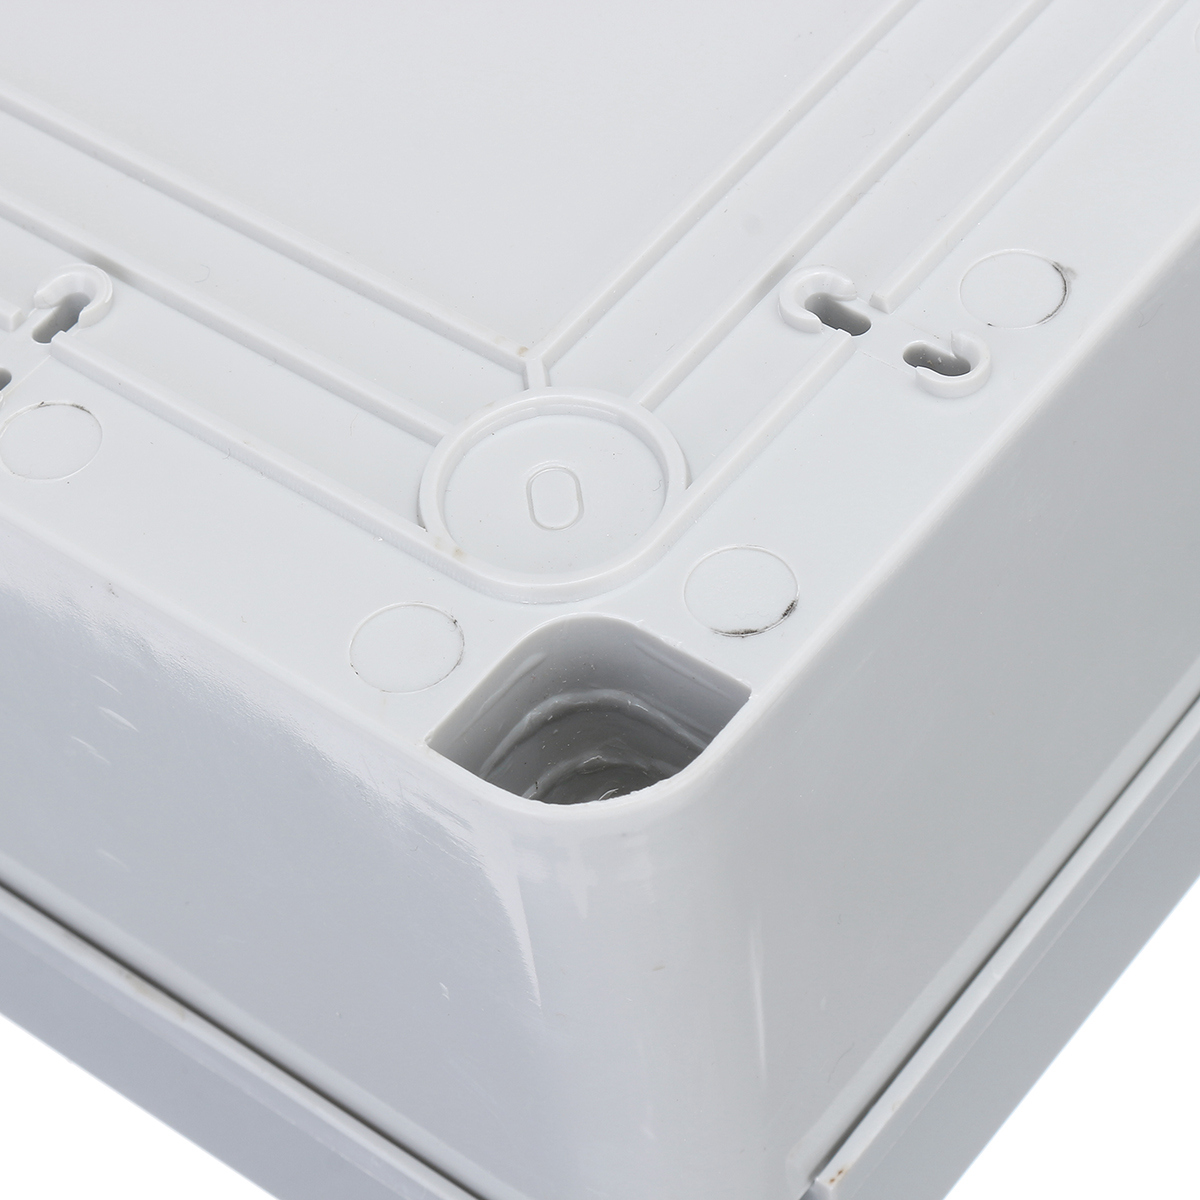 IP65 Weatherproof PVC Plastic Outdoor Industrial Adaptive Junction Box Case